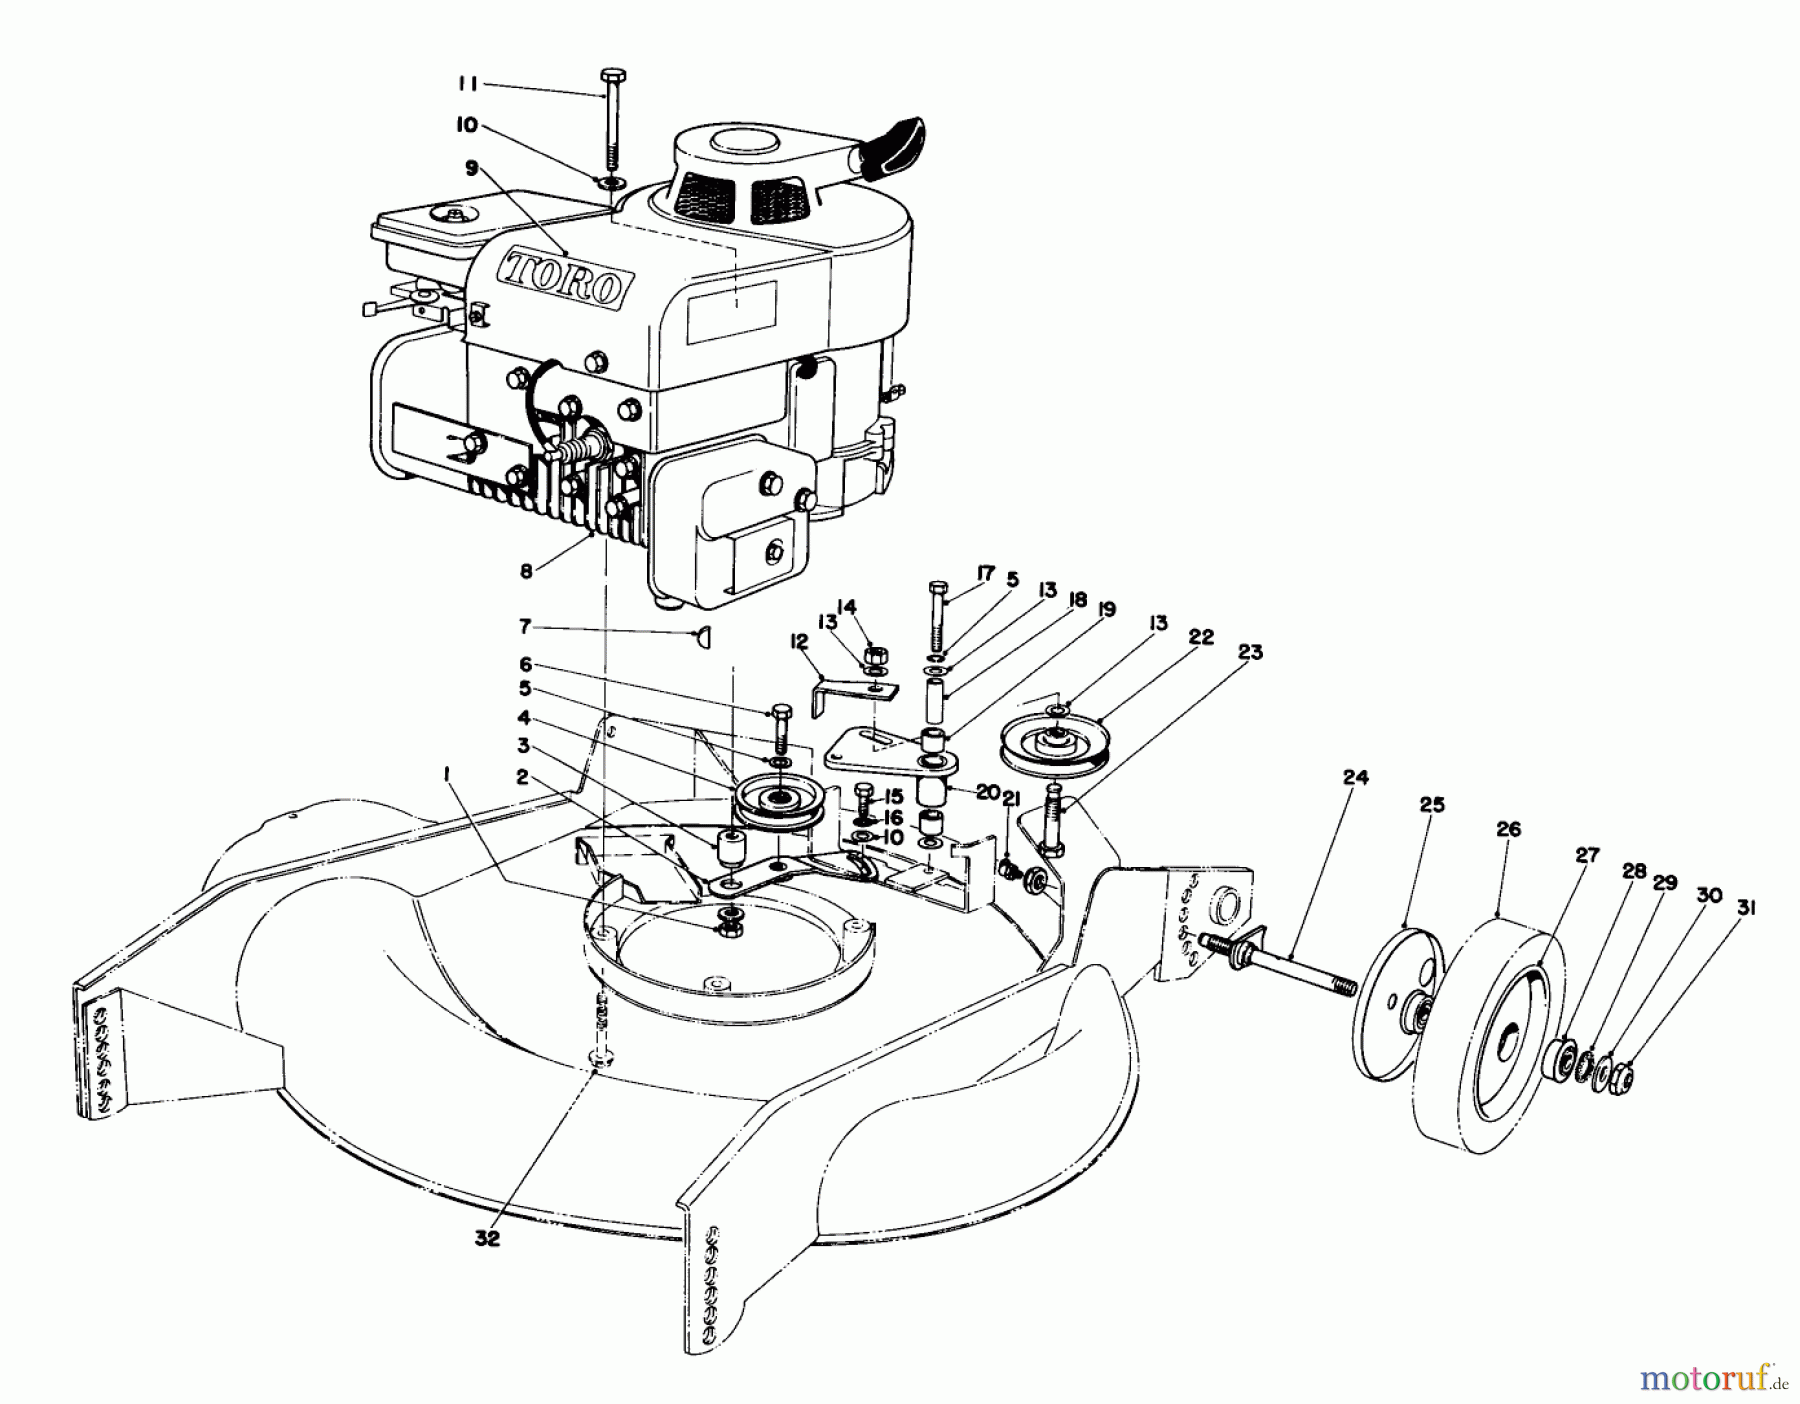  Toro Neu Mowers, Walk-Behind Seite 2 23177 - Toro Lawnmower, 1977 (7000001-7999999) ENGINE ASSEMBLY